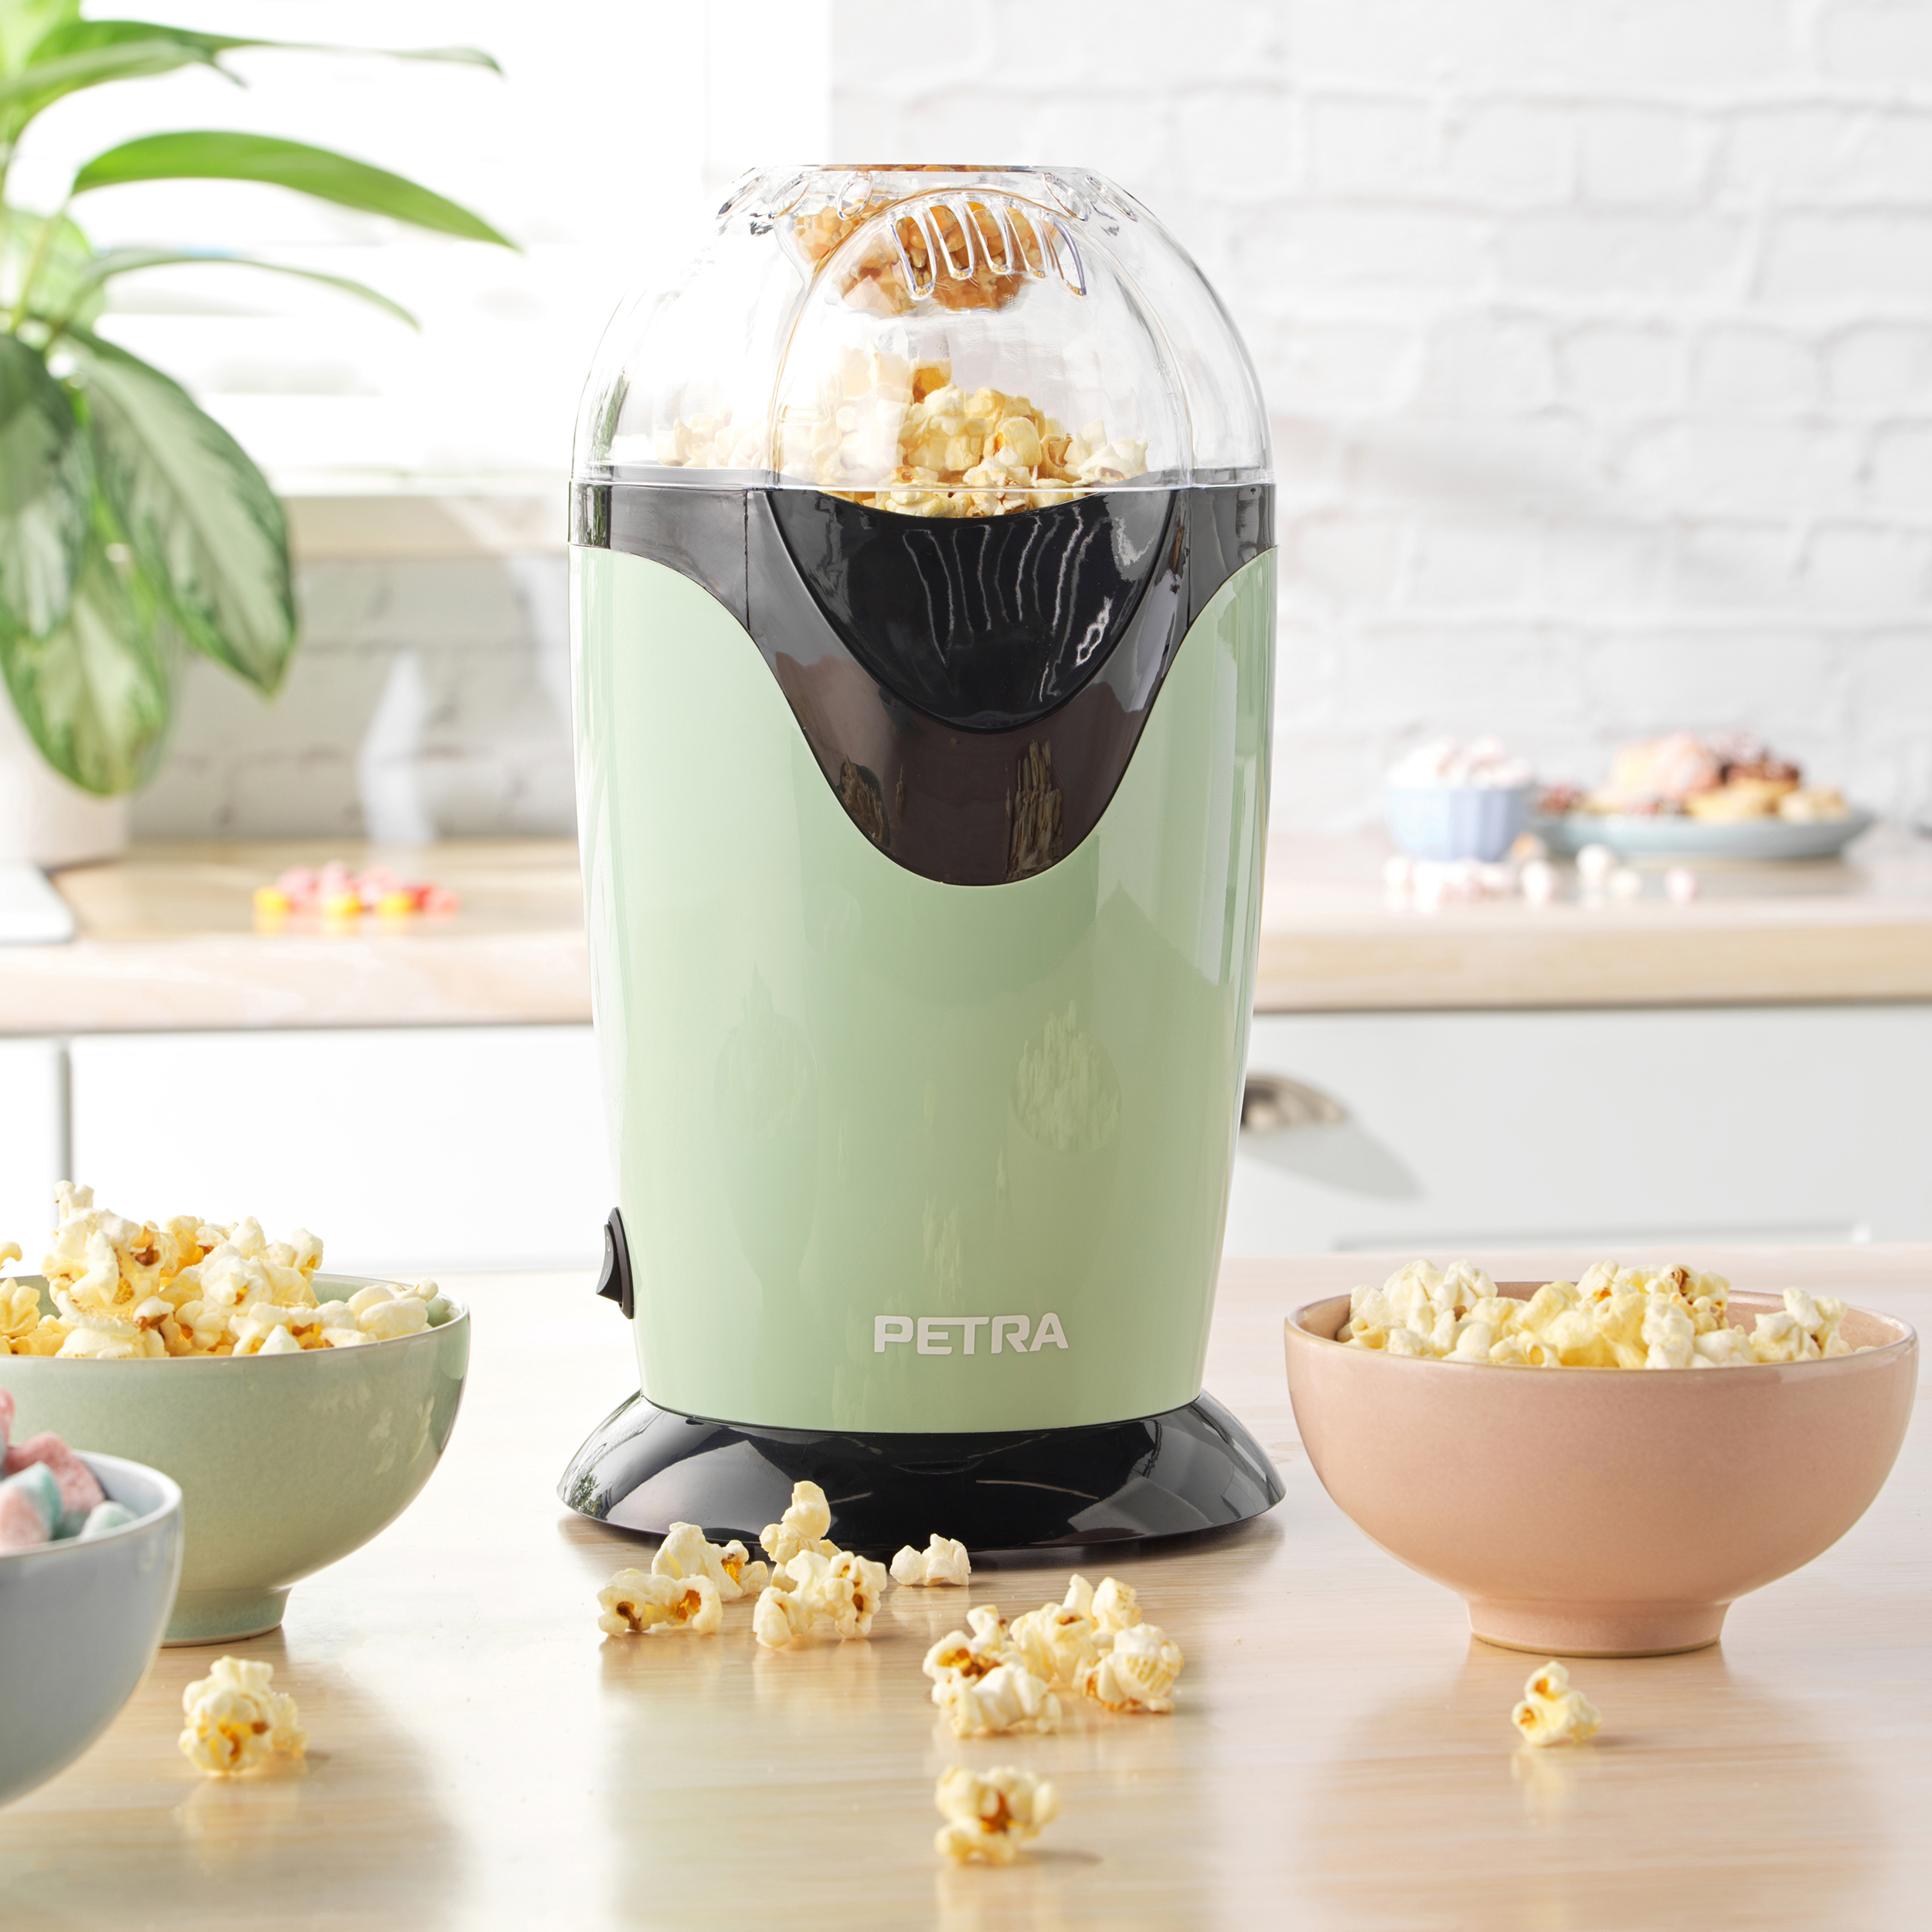 PETRA Retro - 1200W Popcornmaschine Heißluft maker Öl - Messbecher Popcornmaschine Popcorn Popcorn oder grün - Butter - ohne